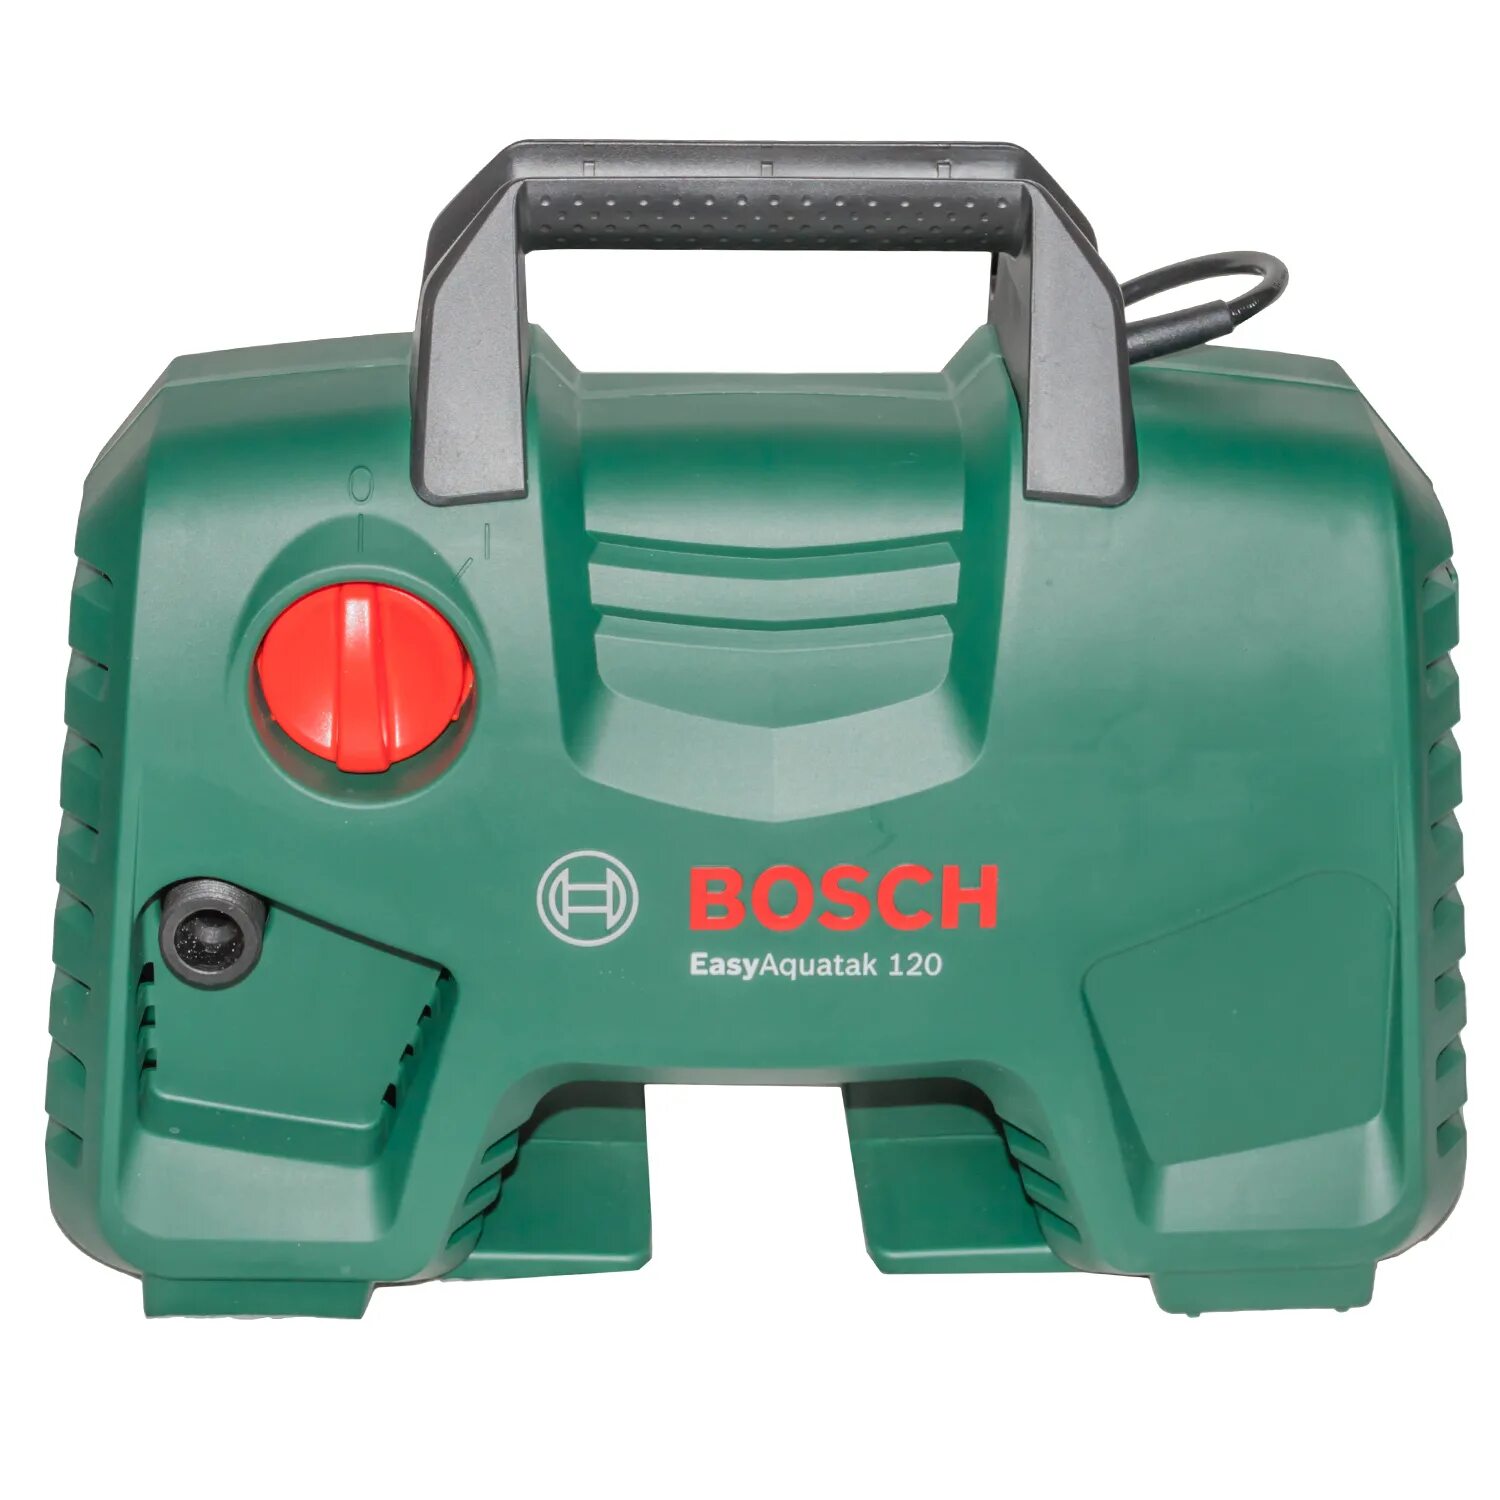 Купить бош 120. Bosch EASYAQUATAK 120. Мойка высокого давления Bosch EASYAQUATAK 120. Очиститель высокого давления Bosch EASYAQUATAK 120. Мойка высокого давления Bosch EASYAQUATAK 120, 120 бар, 350 л/ч.